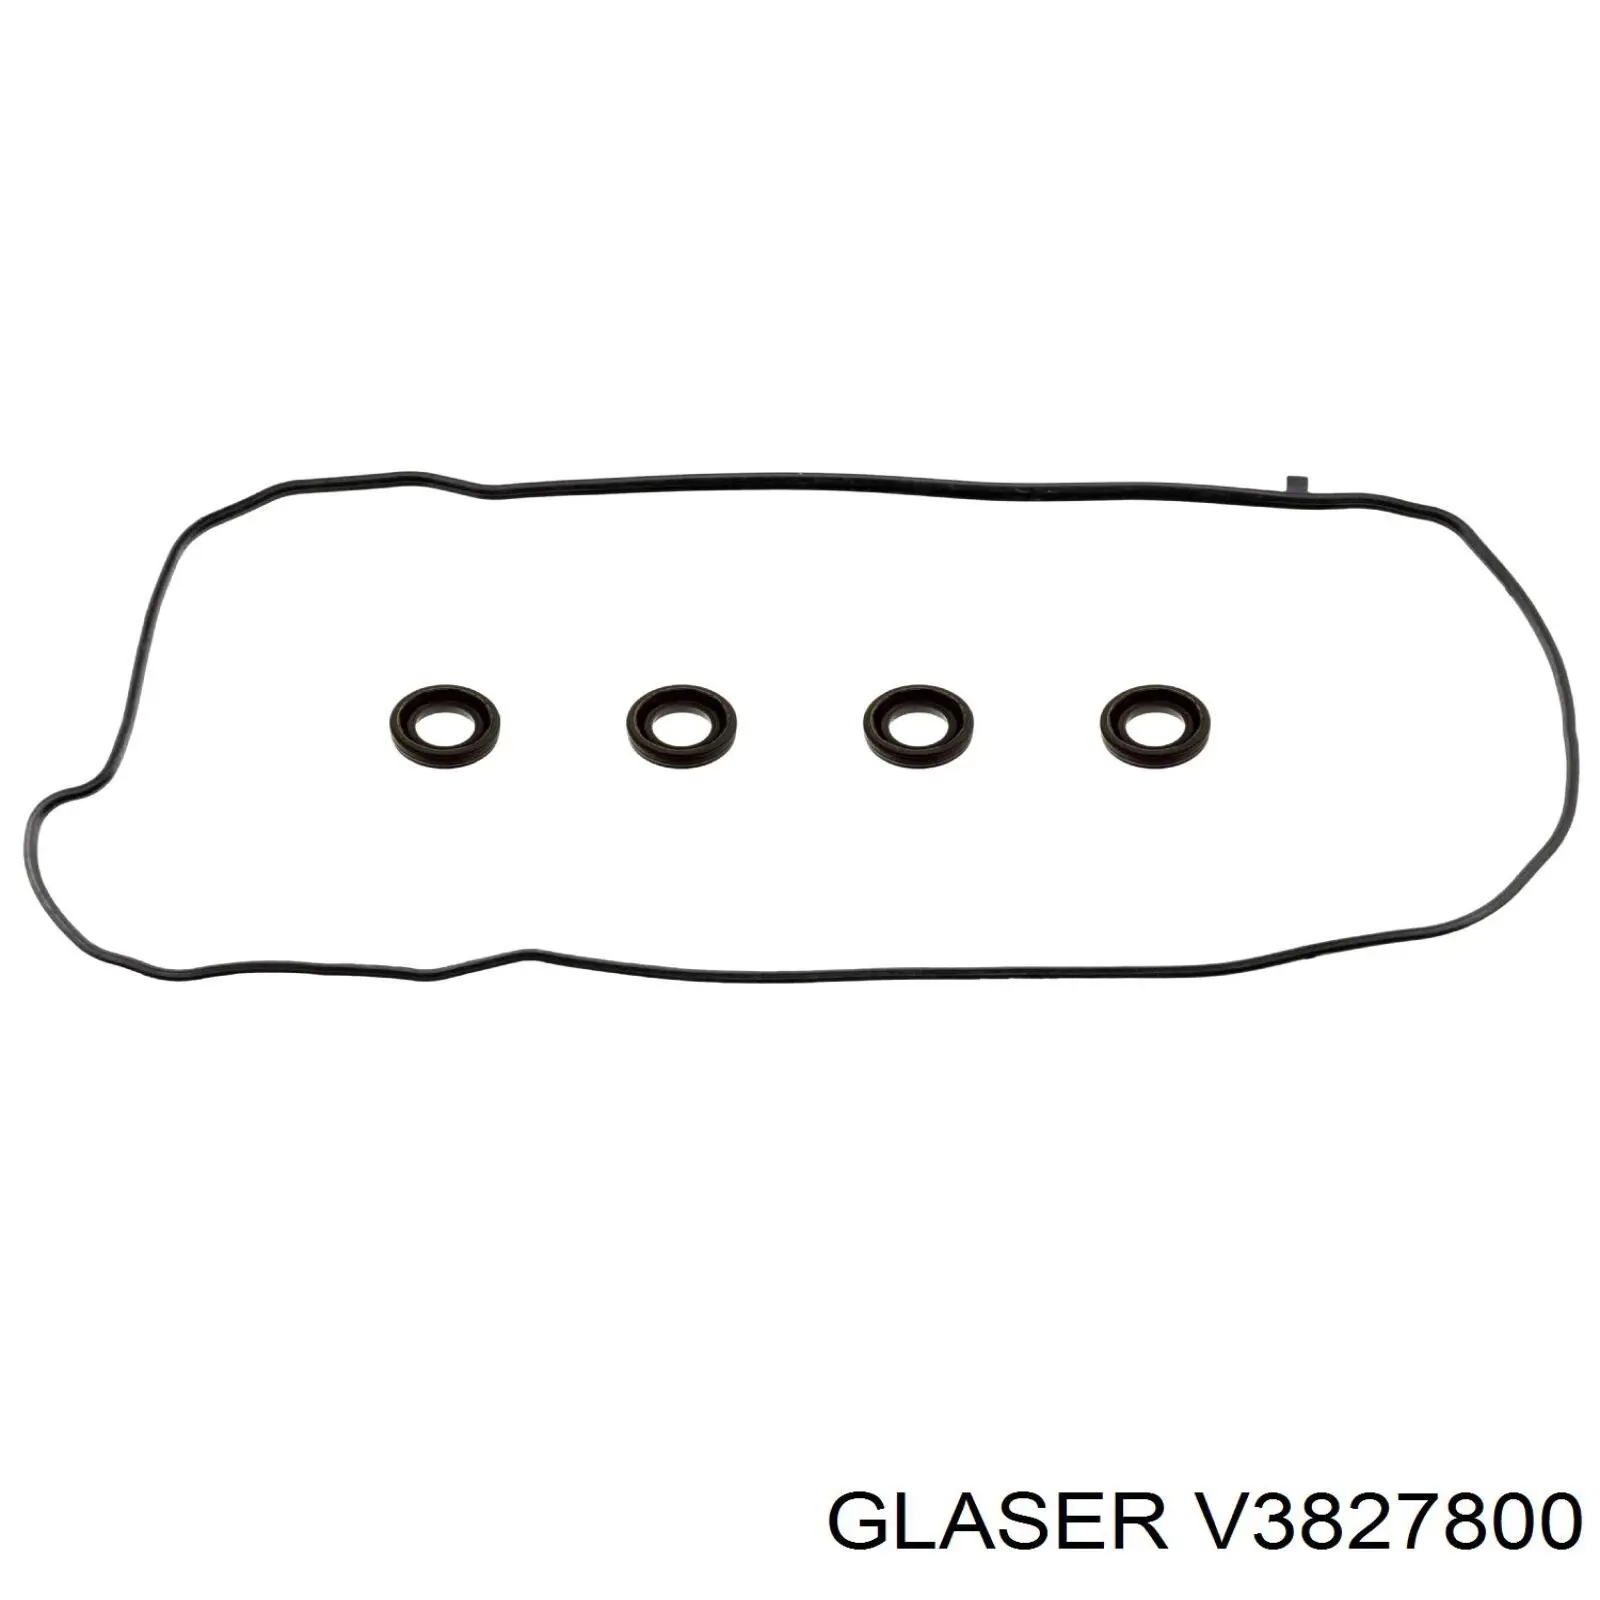 V3827800 Glaser juego de juntas, tapa de culata de cilindro, anillo de junta